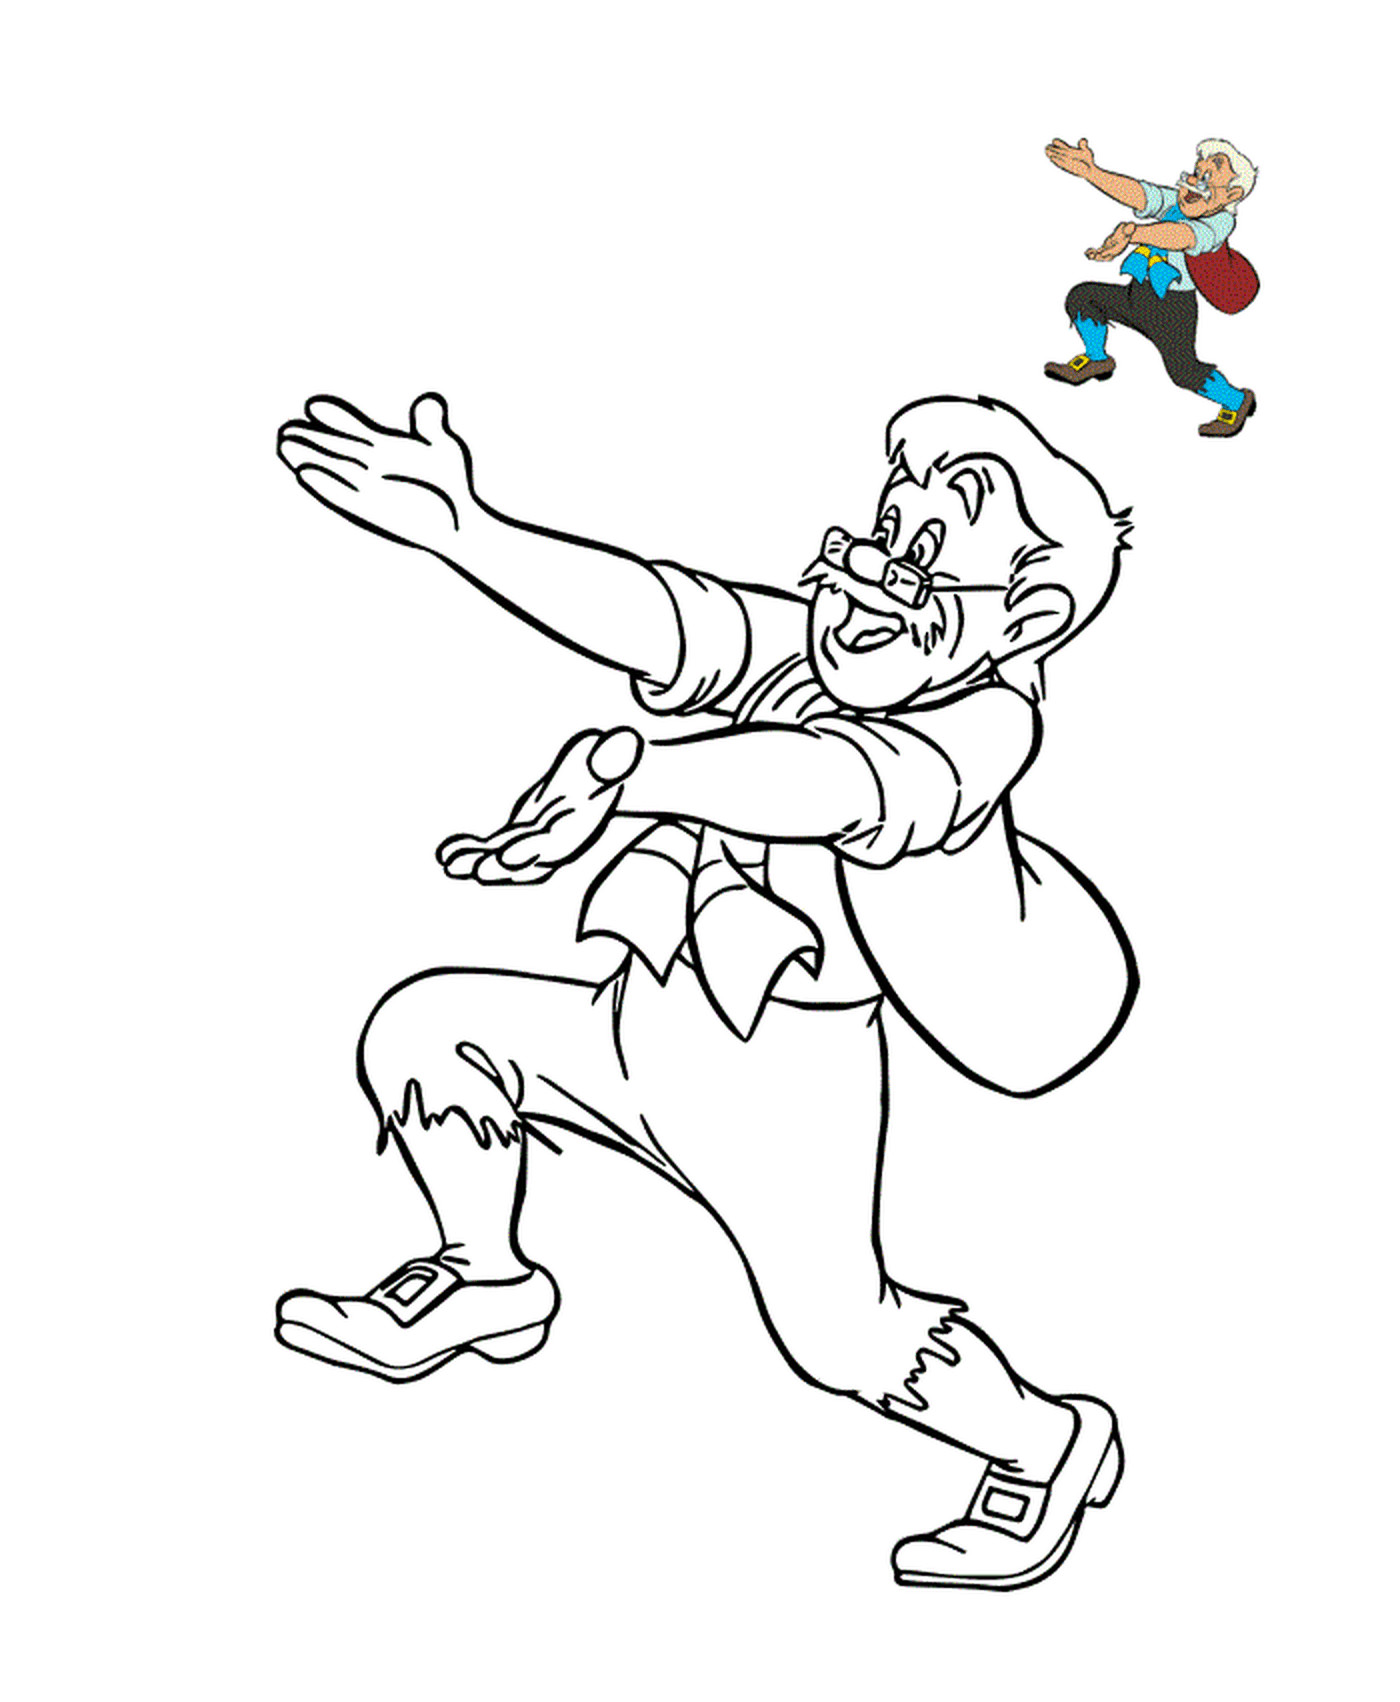  Geppetto, modesto carpintero italiano 